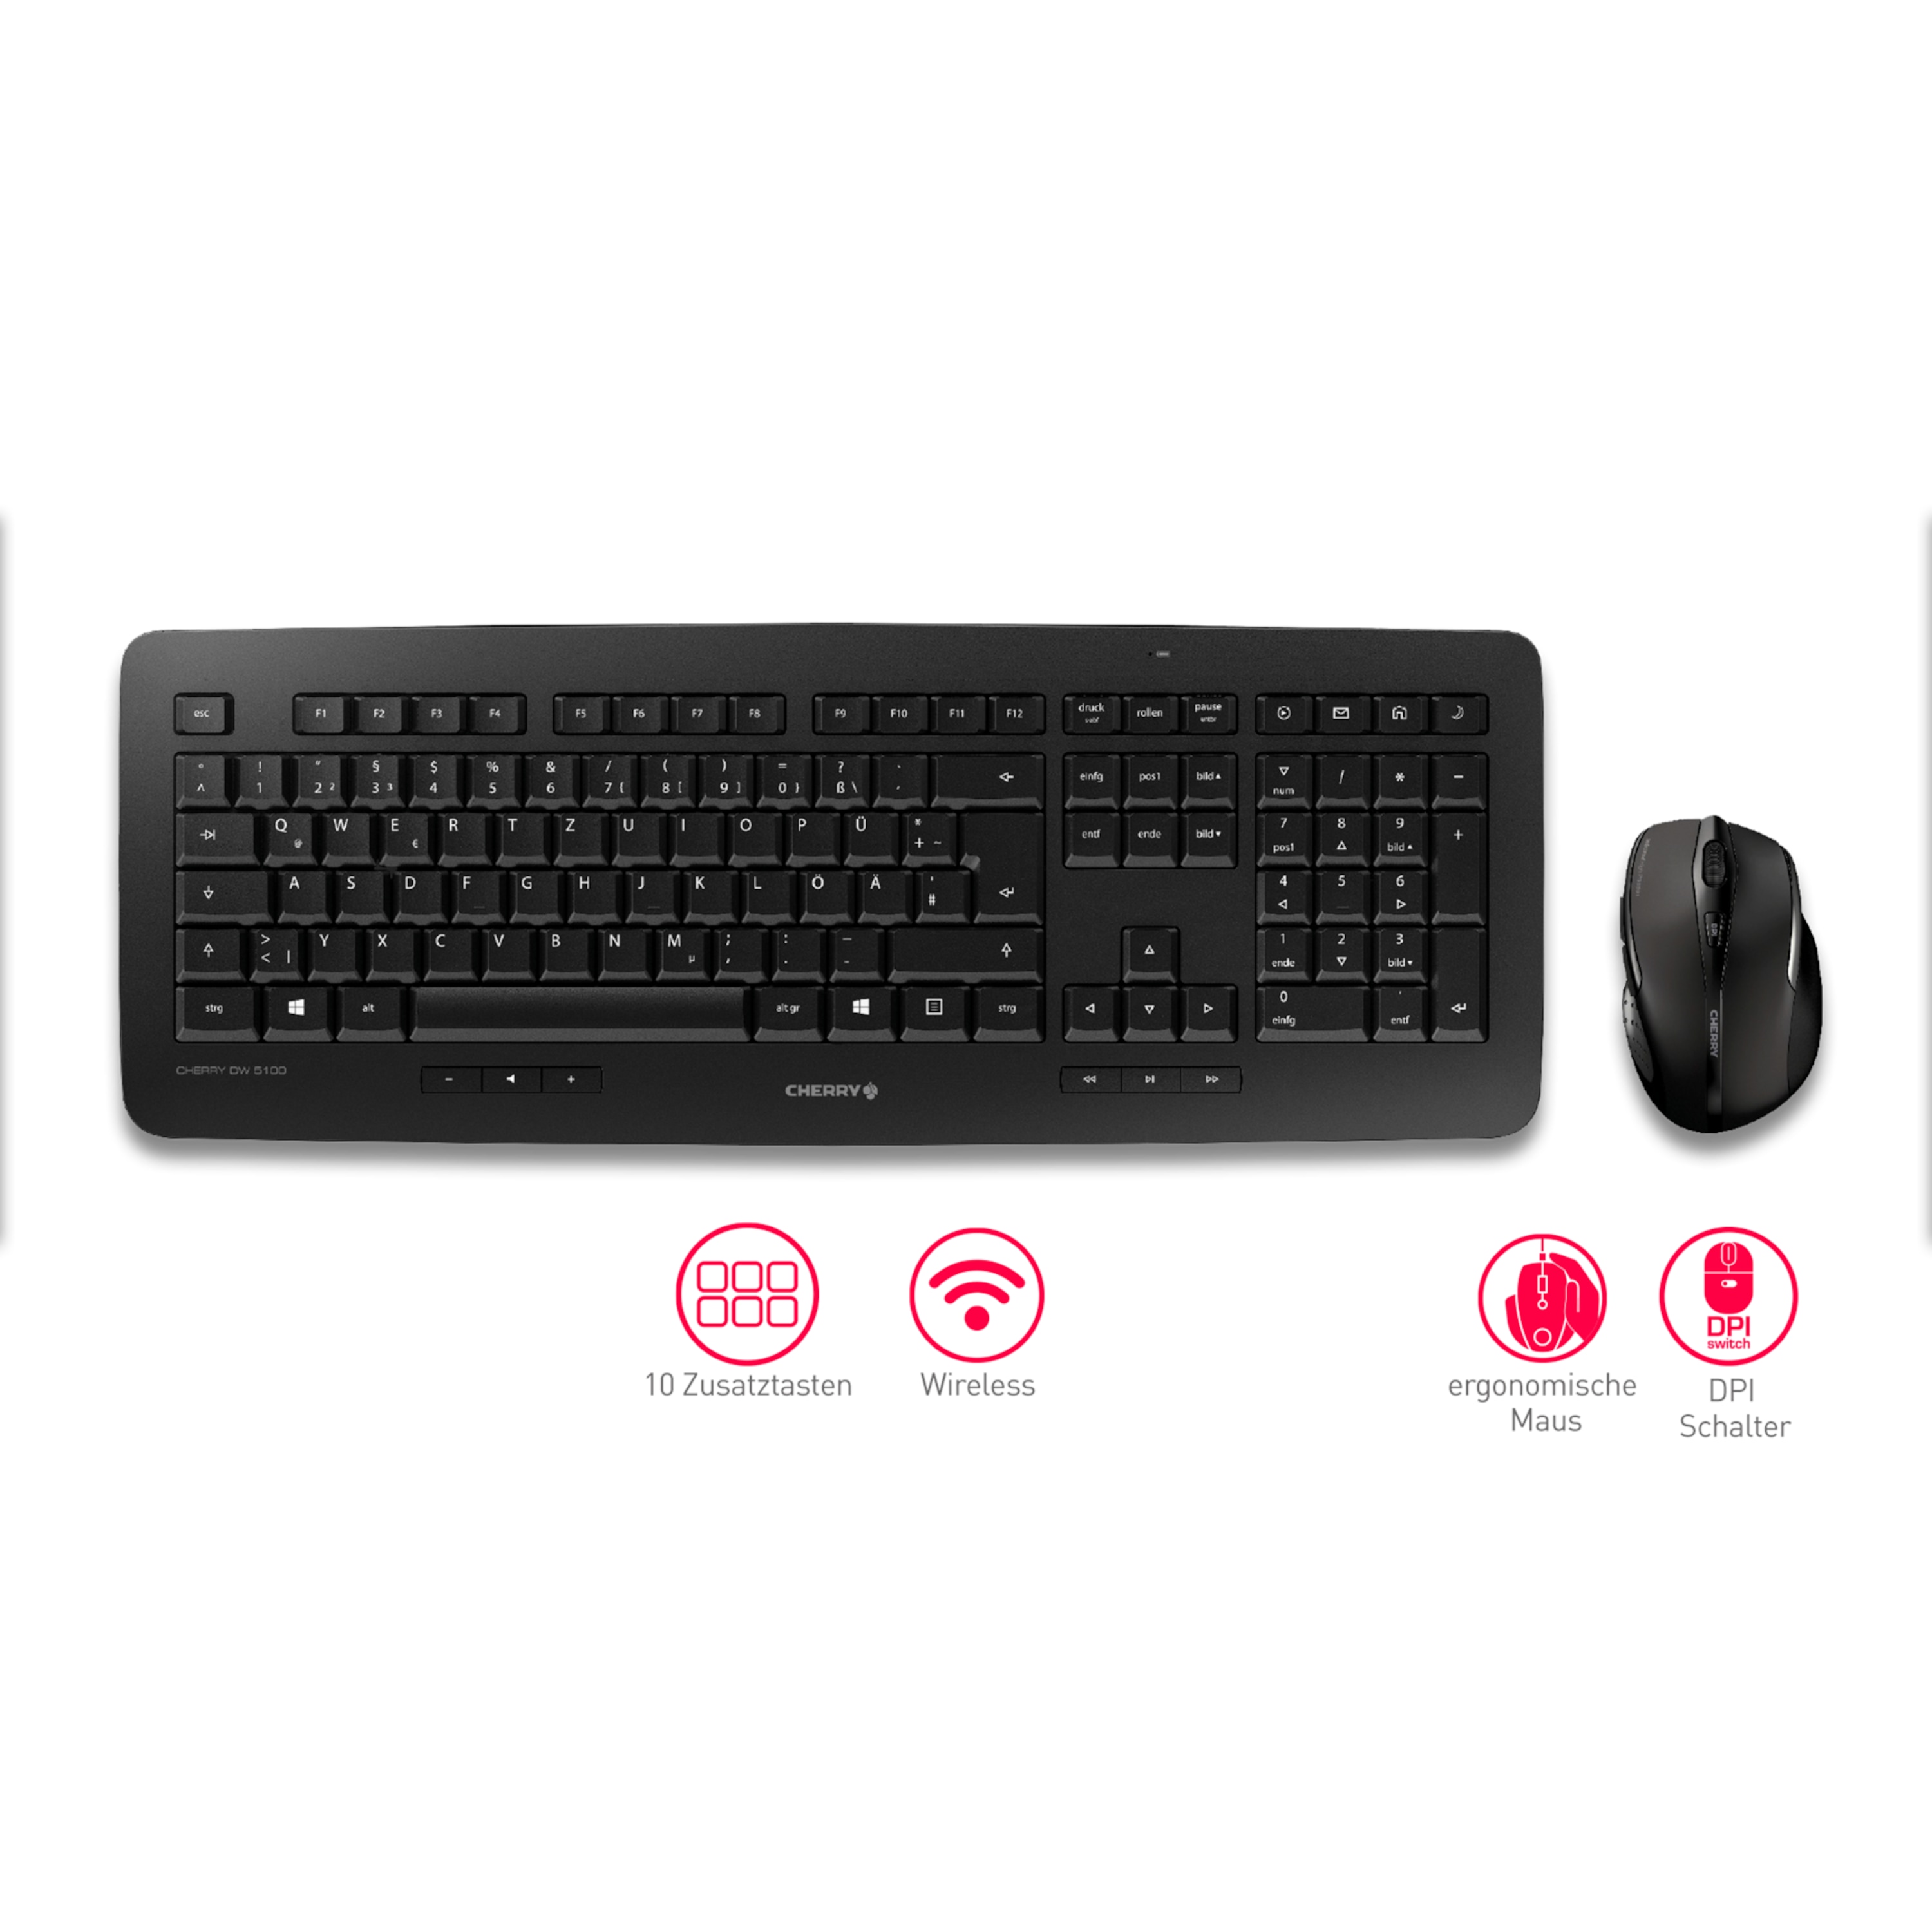 CHERRY DW 5100 Tastatur+Maus Set, Wireless Windows Desktop-Set, hochwertige Profi-Tastatur, ergonomische 6-Tasten Maus